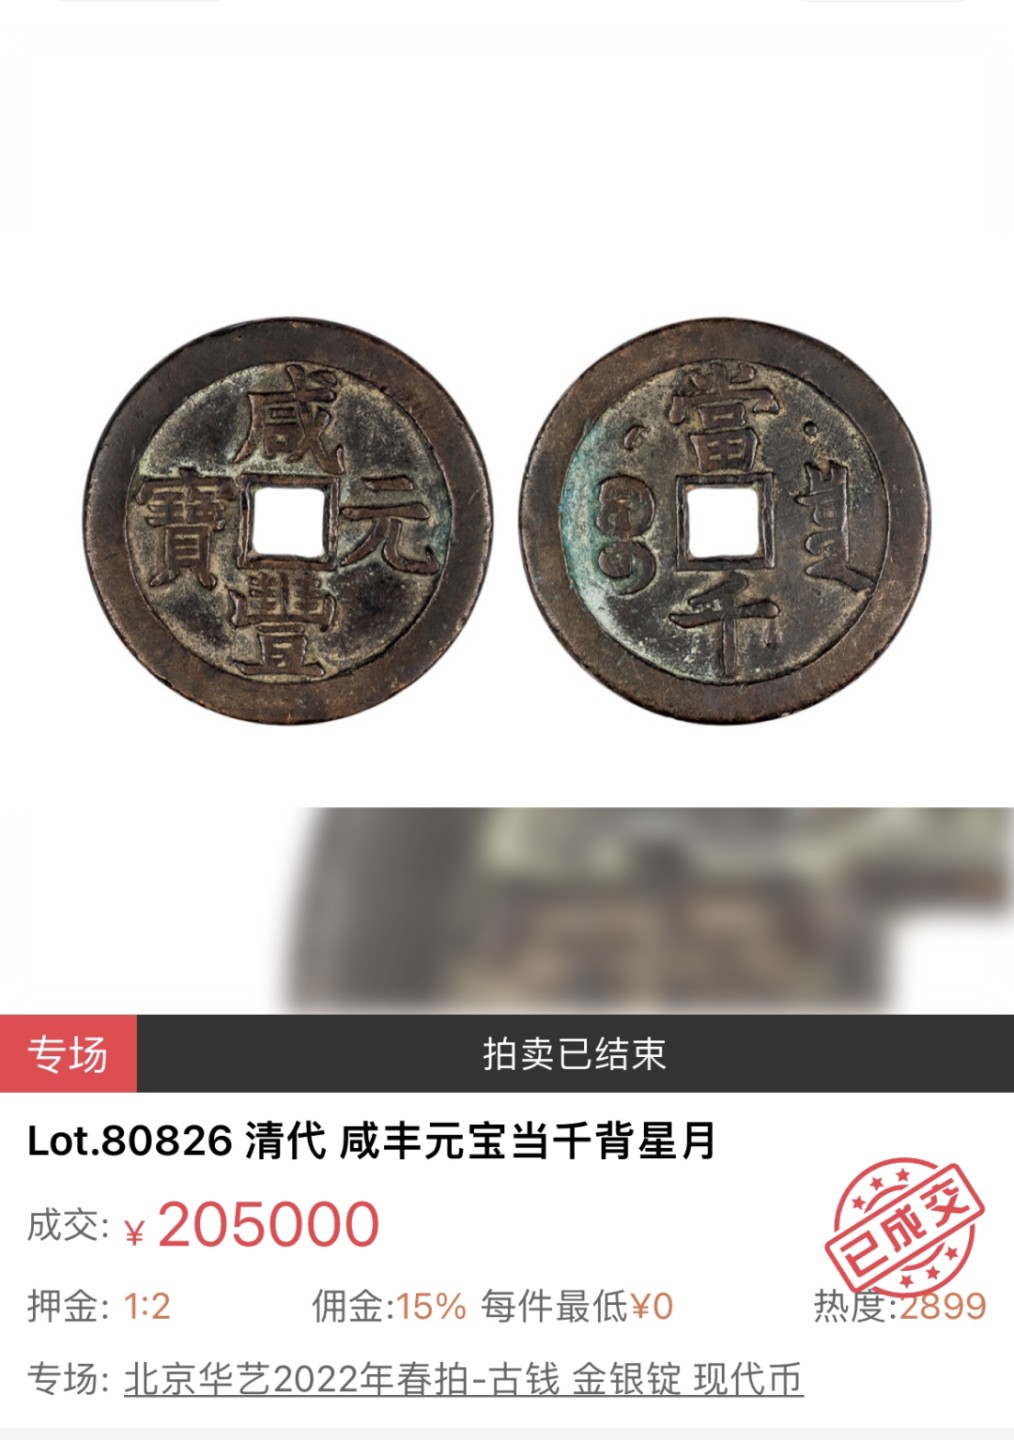 【拍卖行情】【北京华艺国际】2022古钱金银币现代币拍卖行情【8.6】